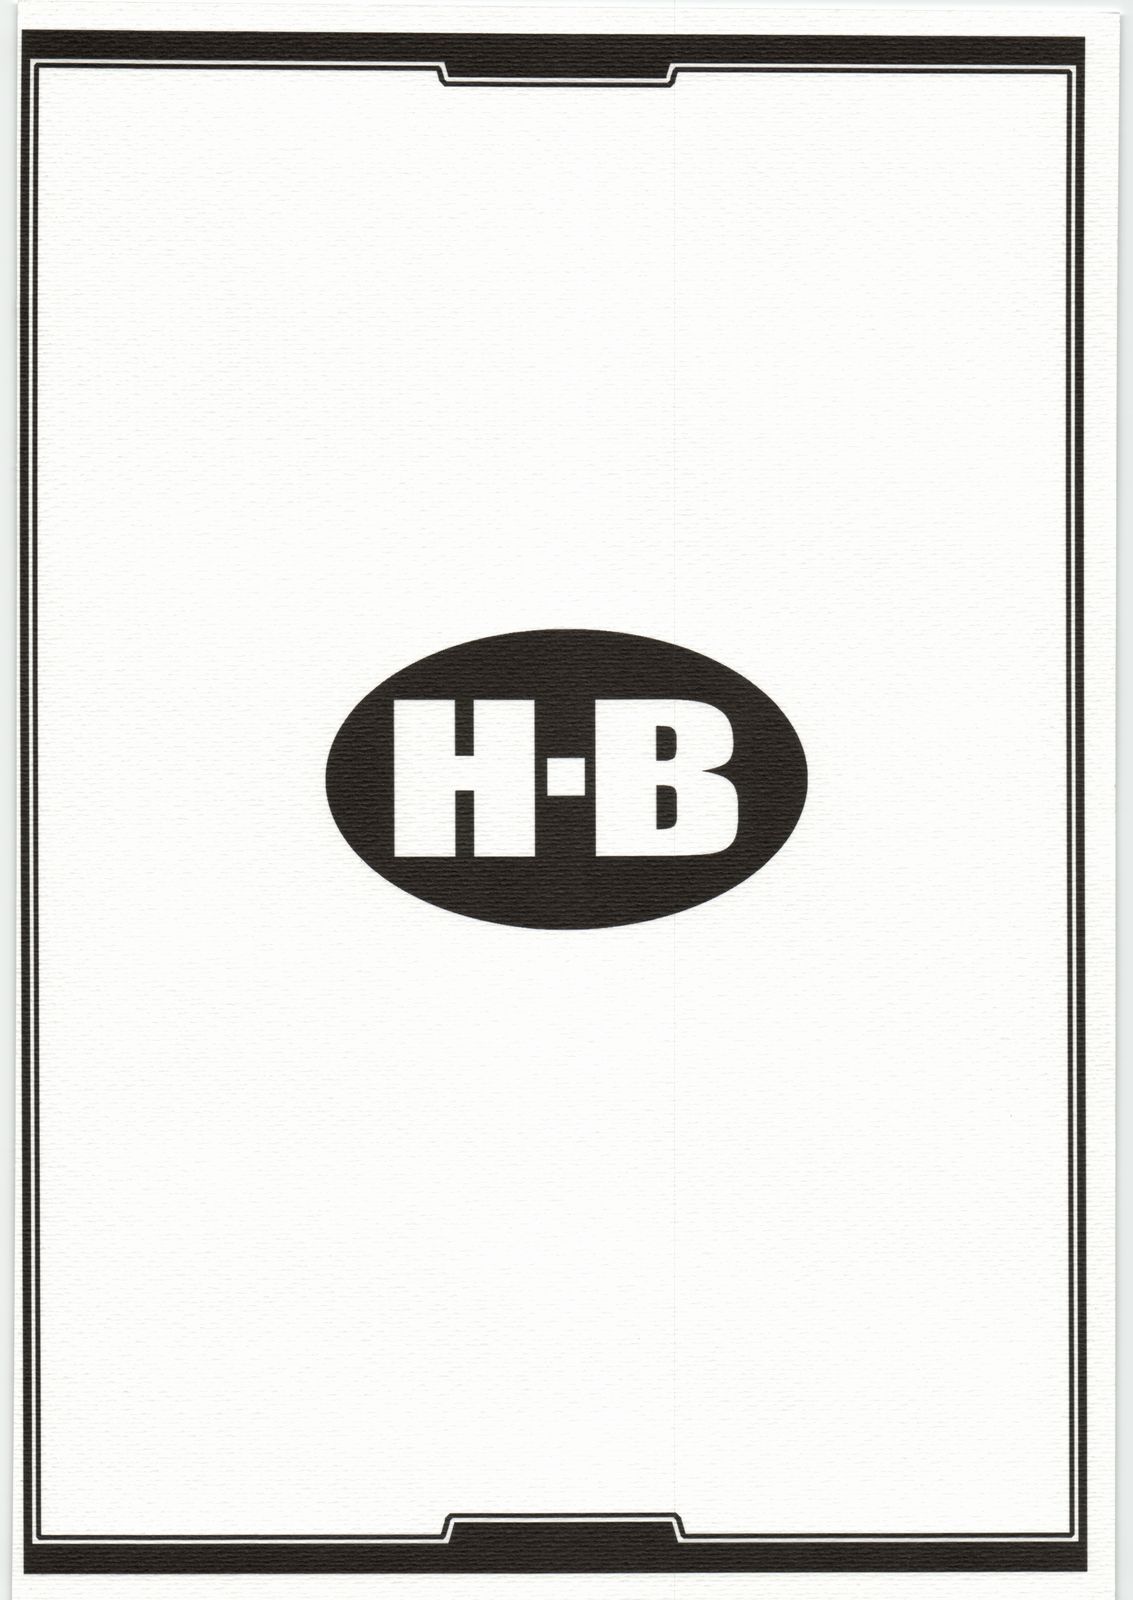 [H.B（B-RIVER）] H.B e.t.c vol.2（各種）